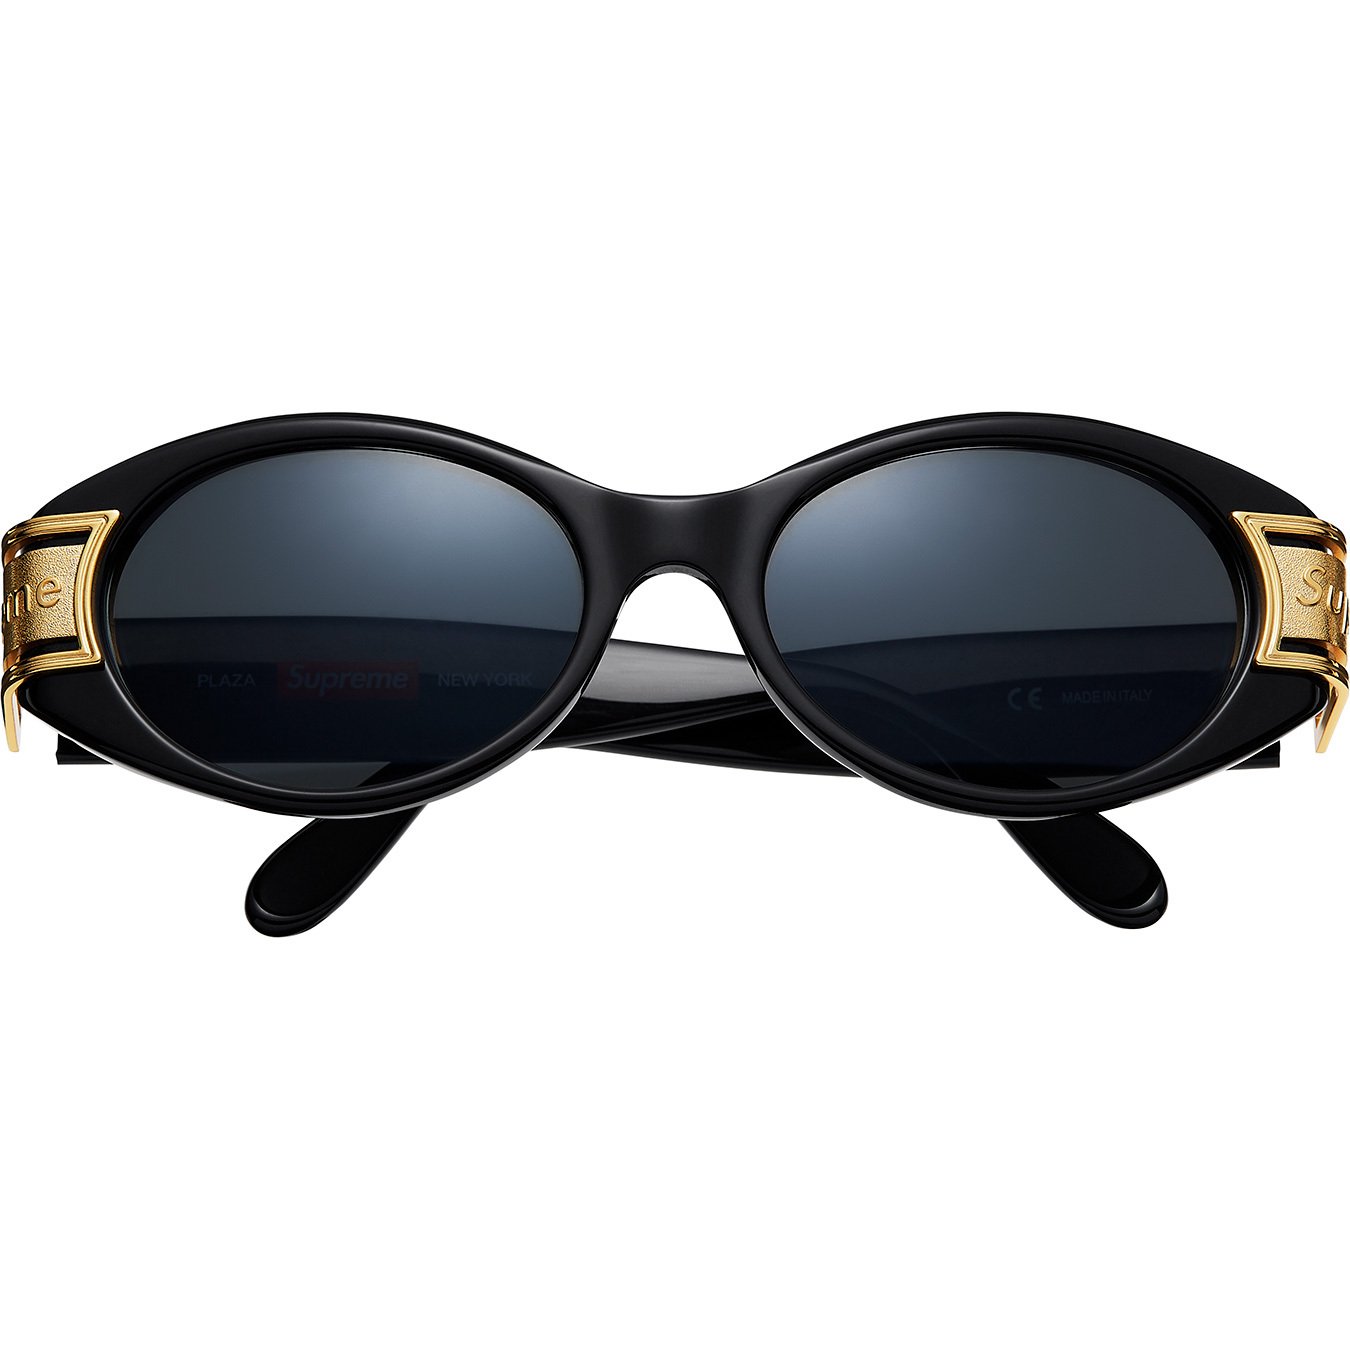 Supreme Plaza Sunglasses Black